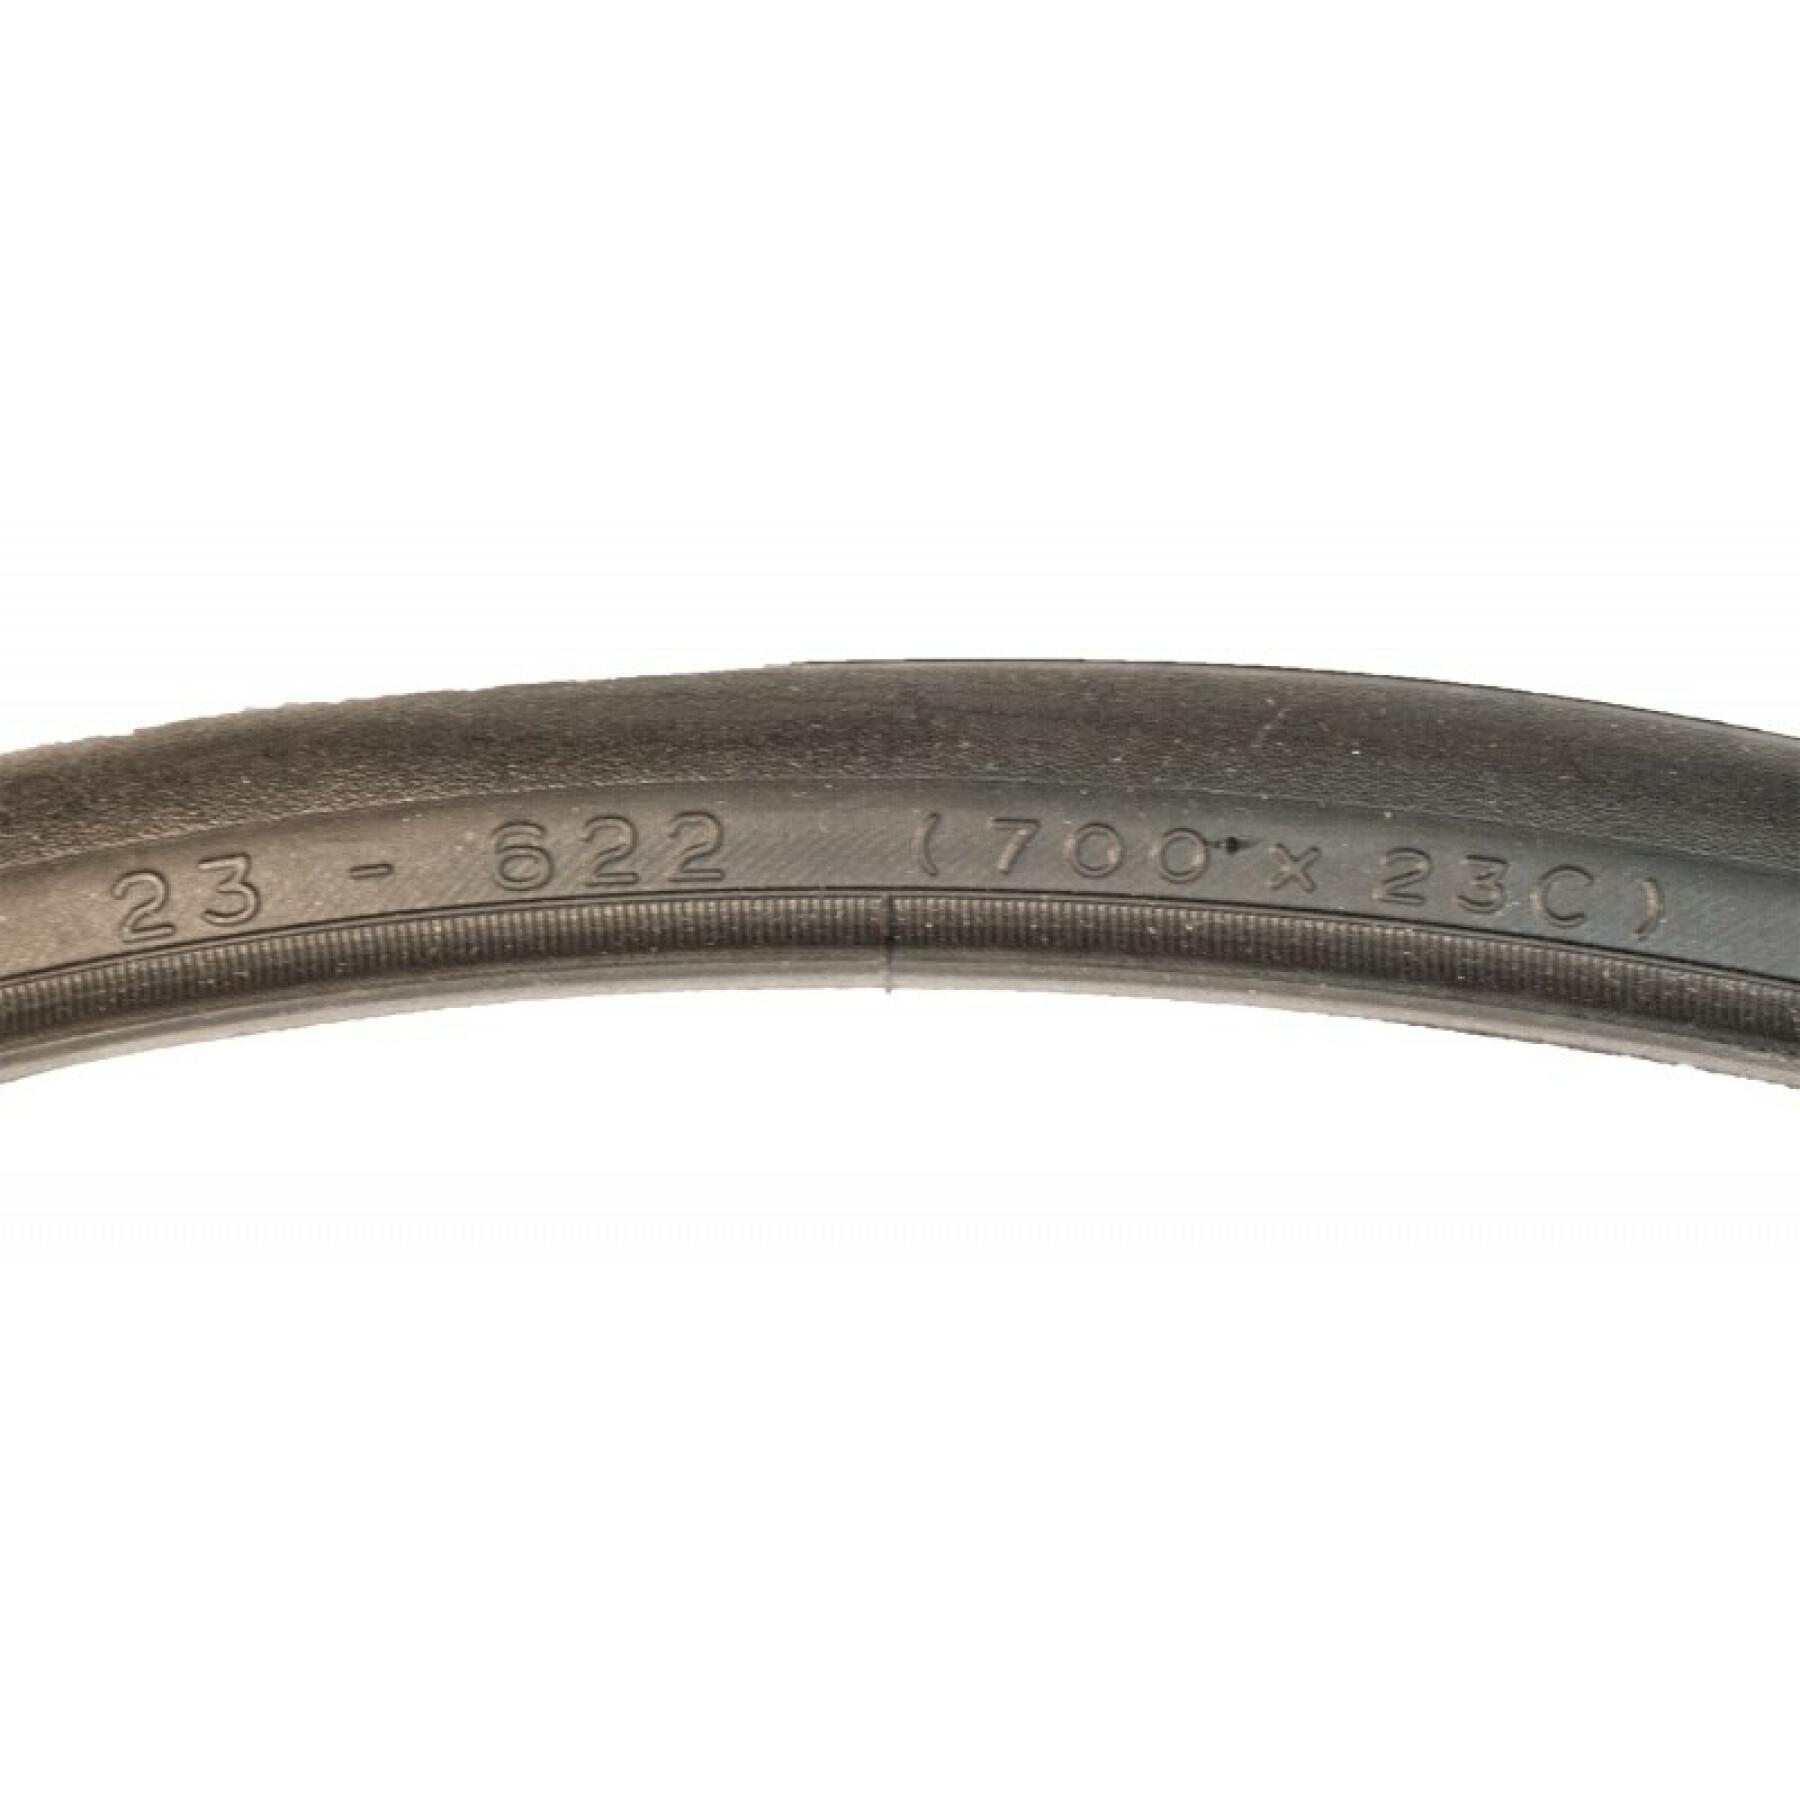 etrto 23-622 700x23c dynamic sport road tyre access line Michelin